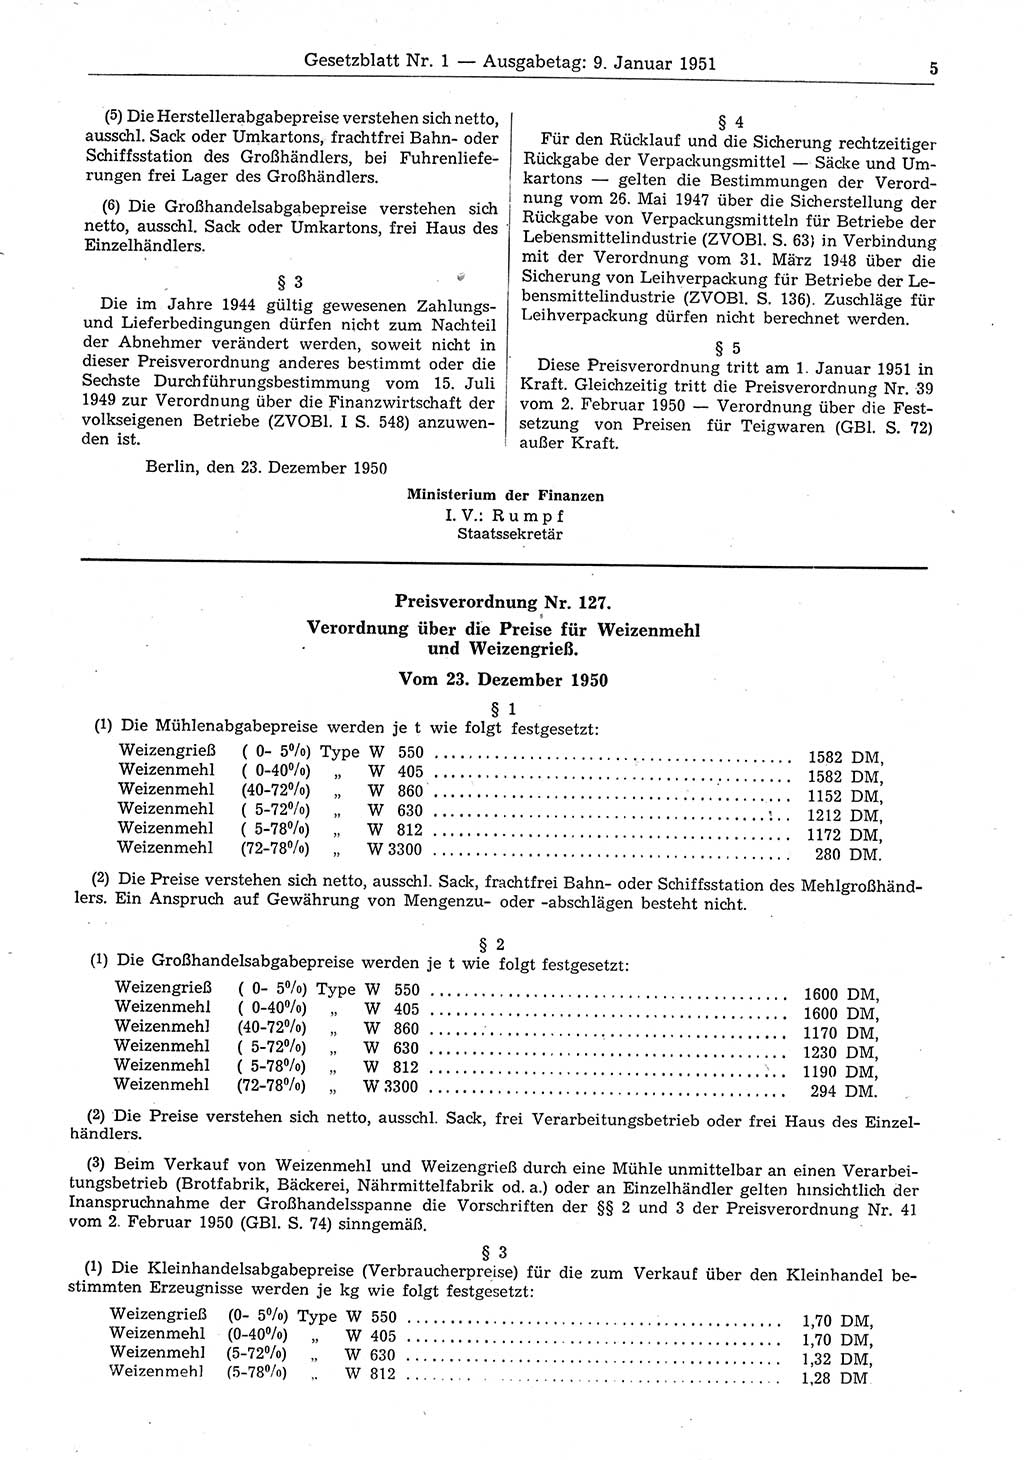 Gesetzblatt (GBl.) der Deutschen Demokratischen Republik (DDR) 1951, Seite 5 (GBl. DDR 1951, S. 5)